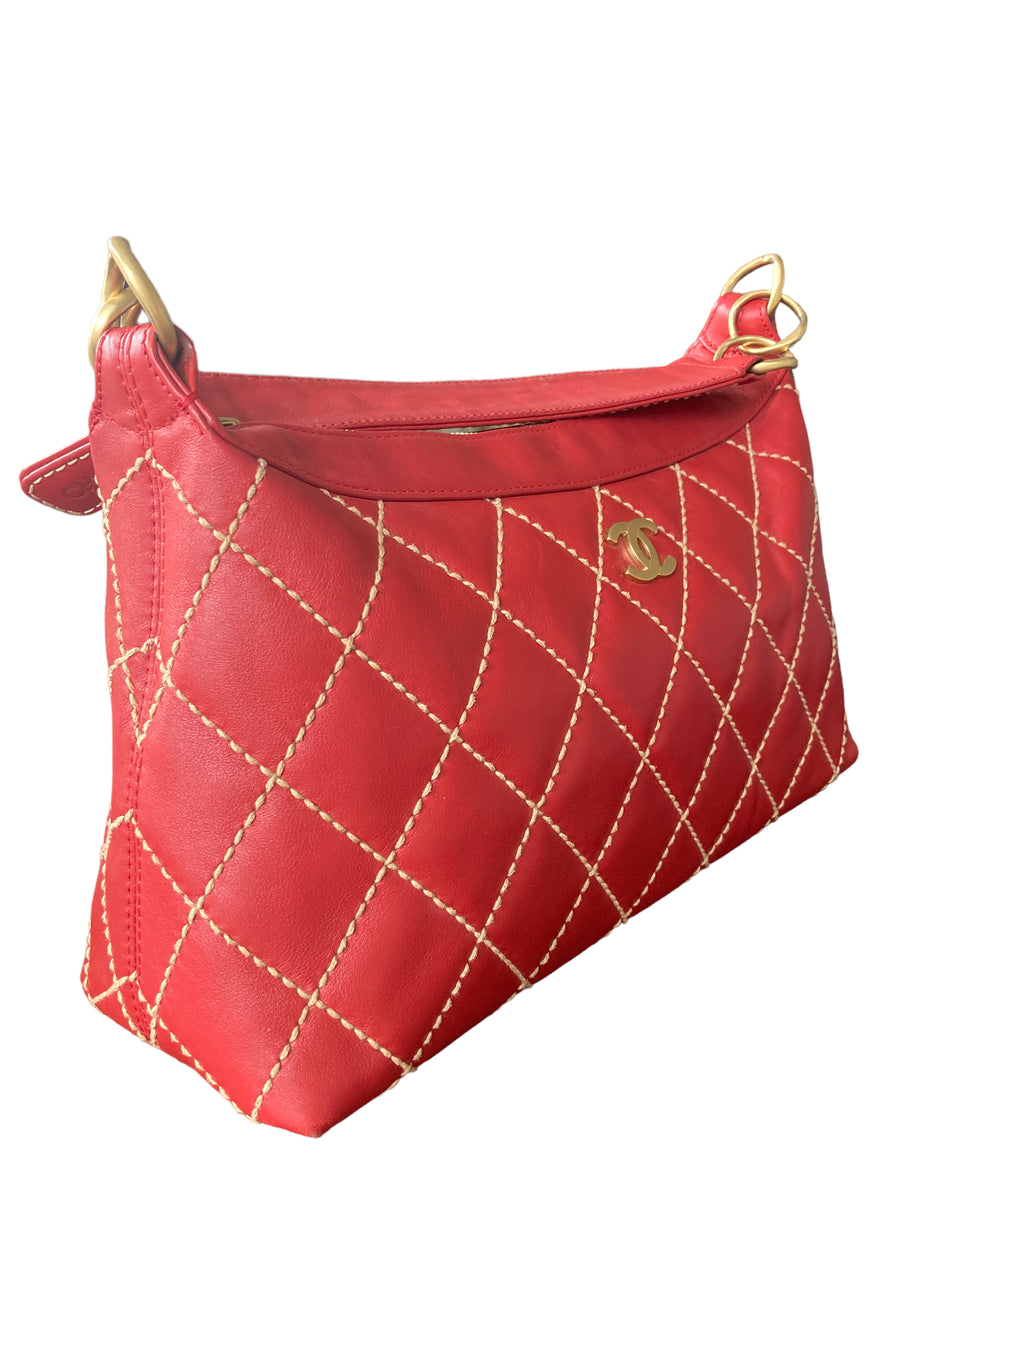 Jean-Louis Scherrer Authenticated Handbag